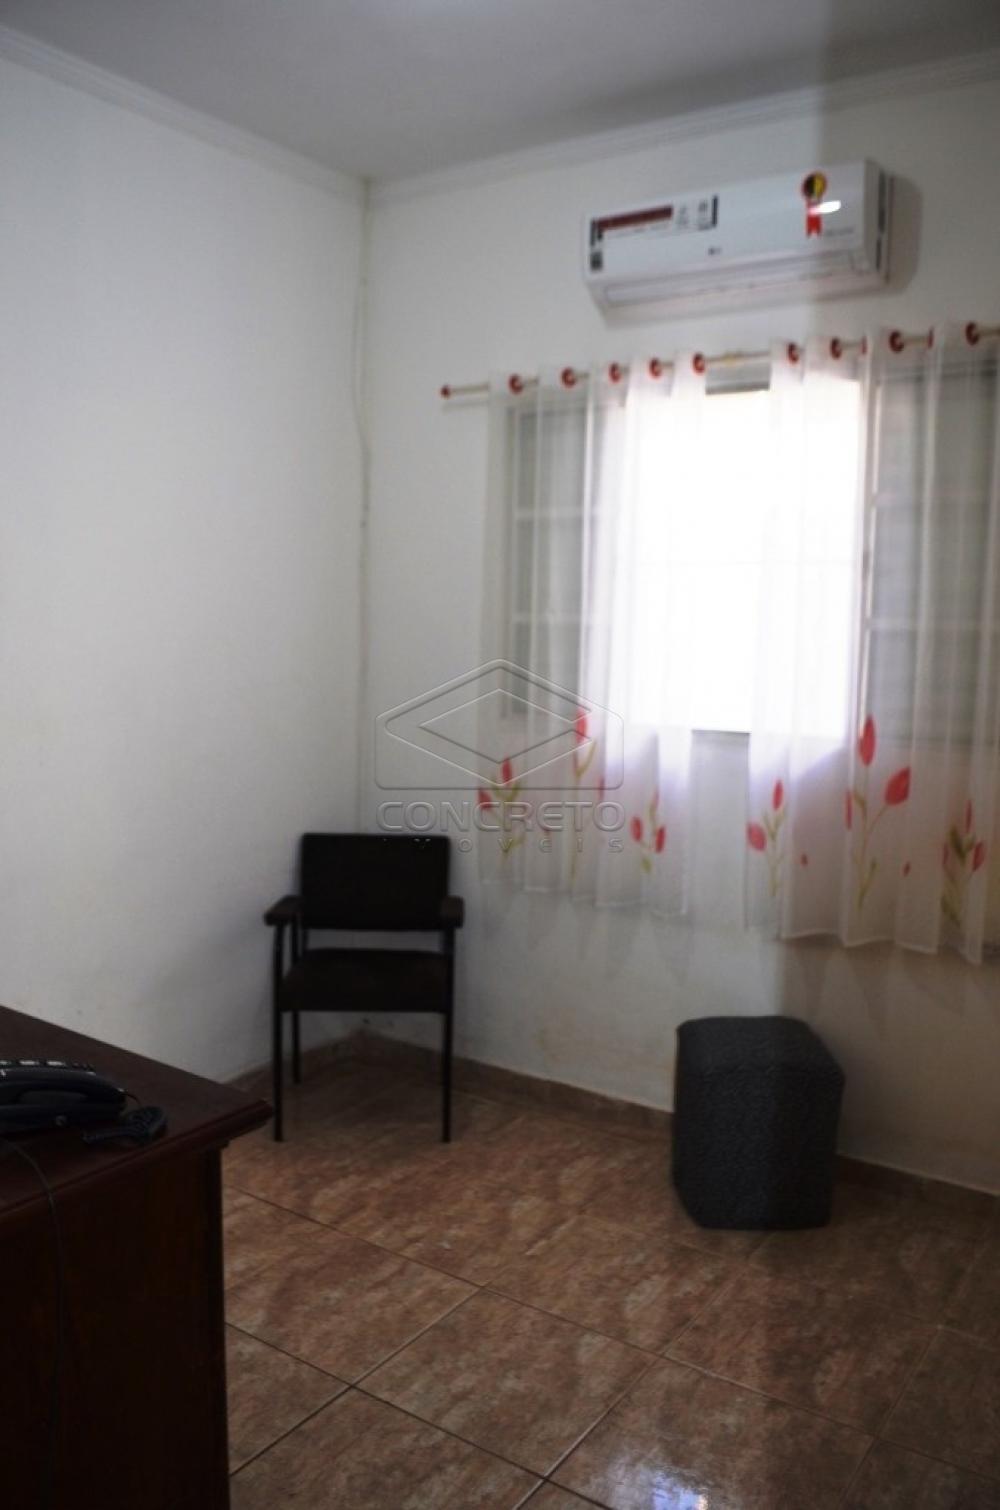 Comprar Casa / Residencia em Bauru R$ 300.000,00 - Foto 14